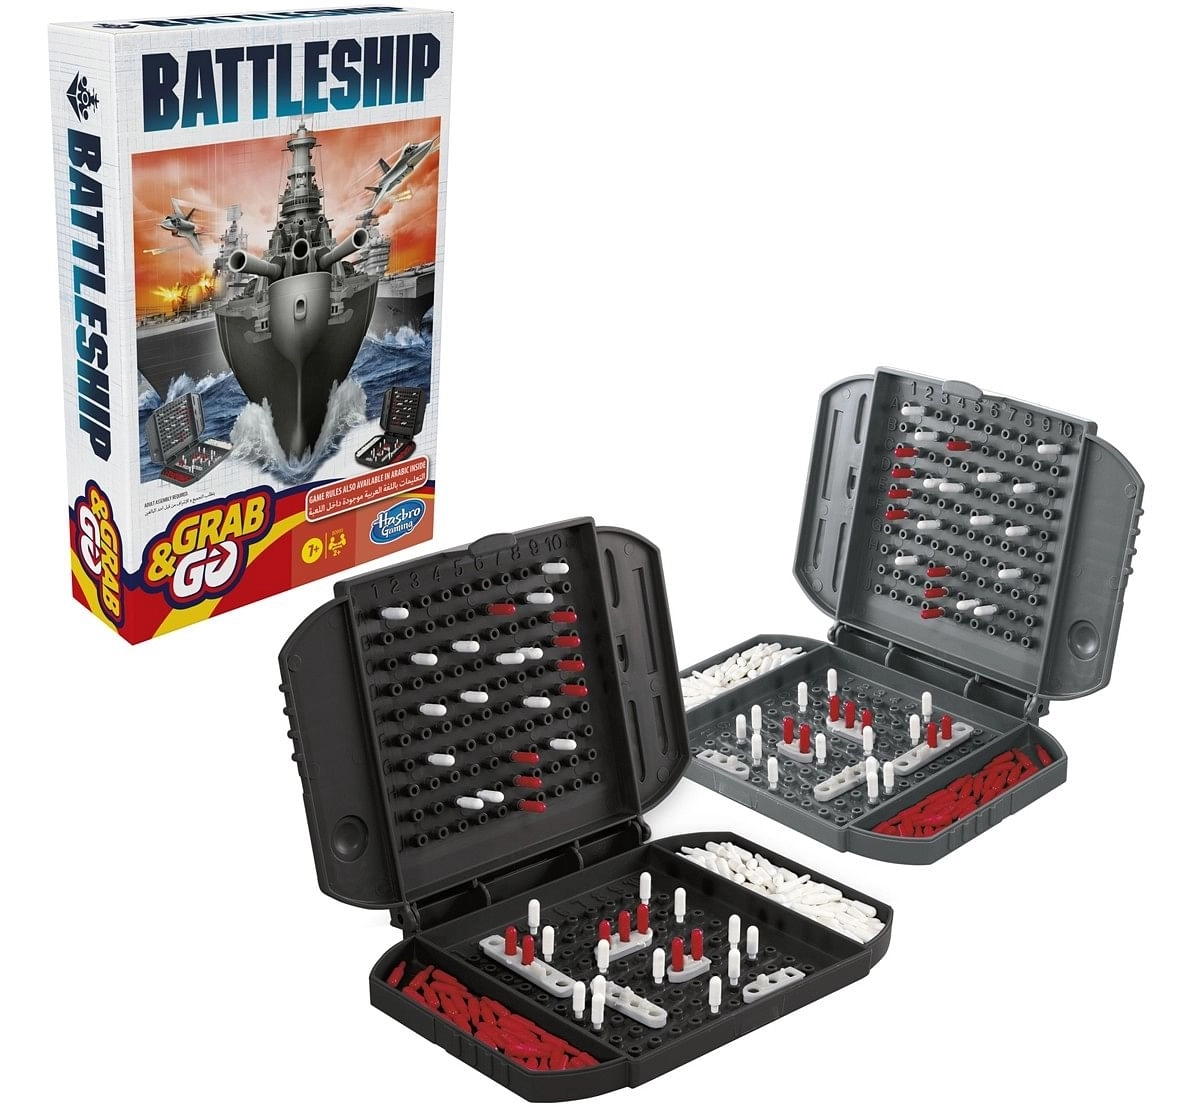 Hasbro Battleship Grab and Go Game Multicolor 8Y+